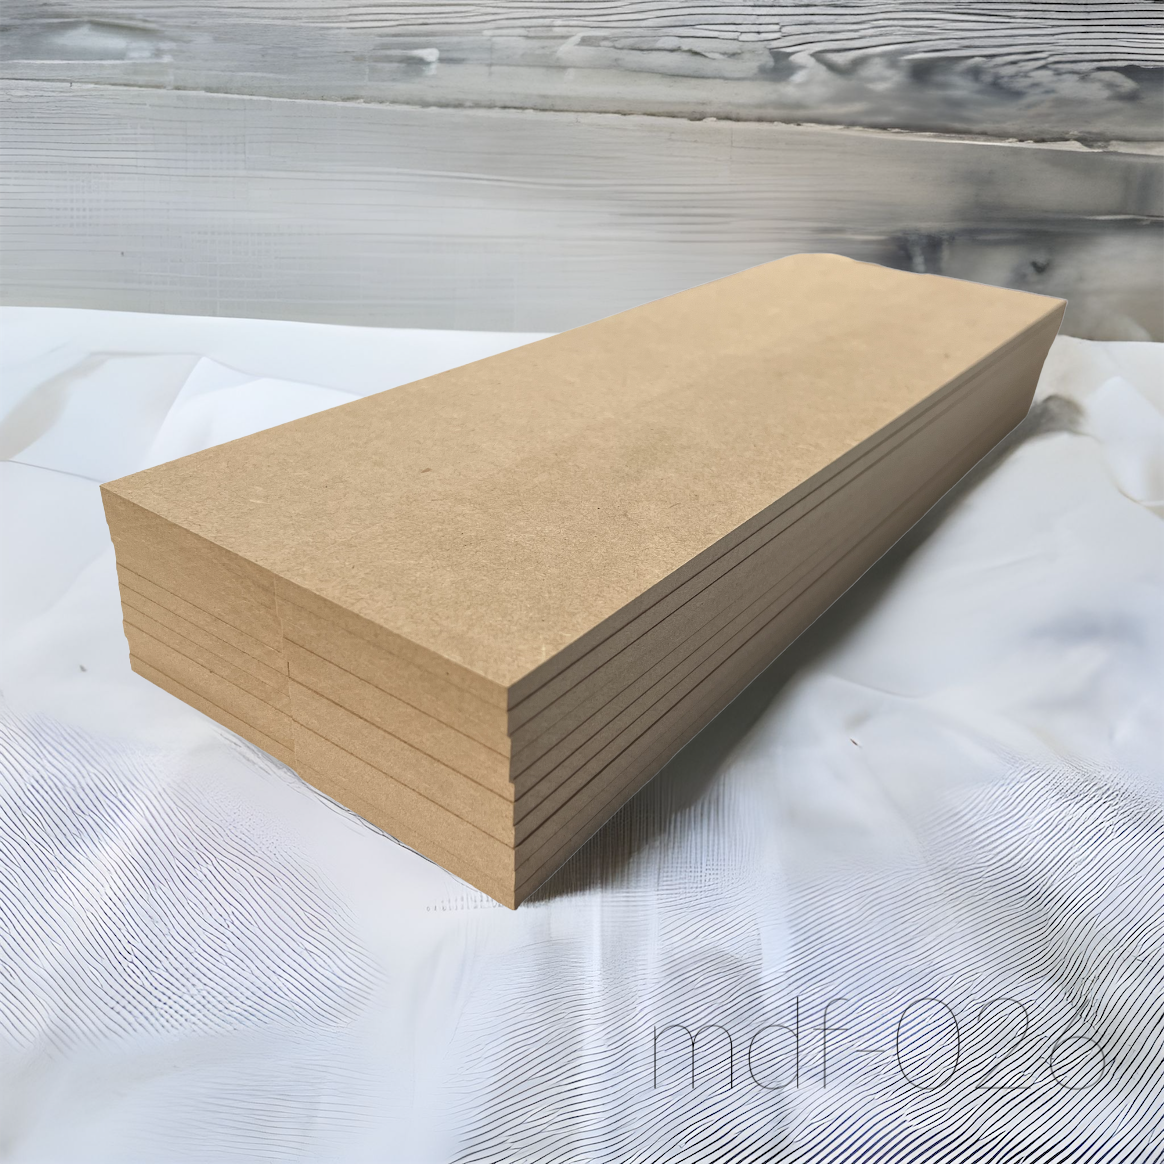 木材 MDF材 12mm厚 900mm×1800mm (3×6・サブロク) 1枚 MDFボード MDF板 直線カットオーダー対応(10回無料) 板 diy 材料 (事業所向け) - 12